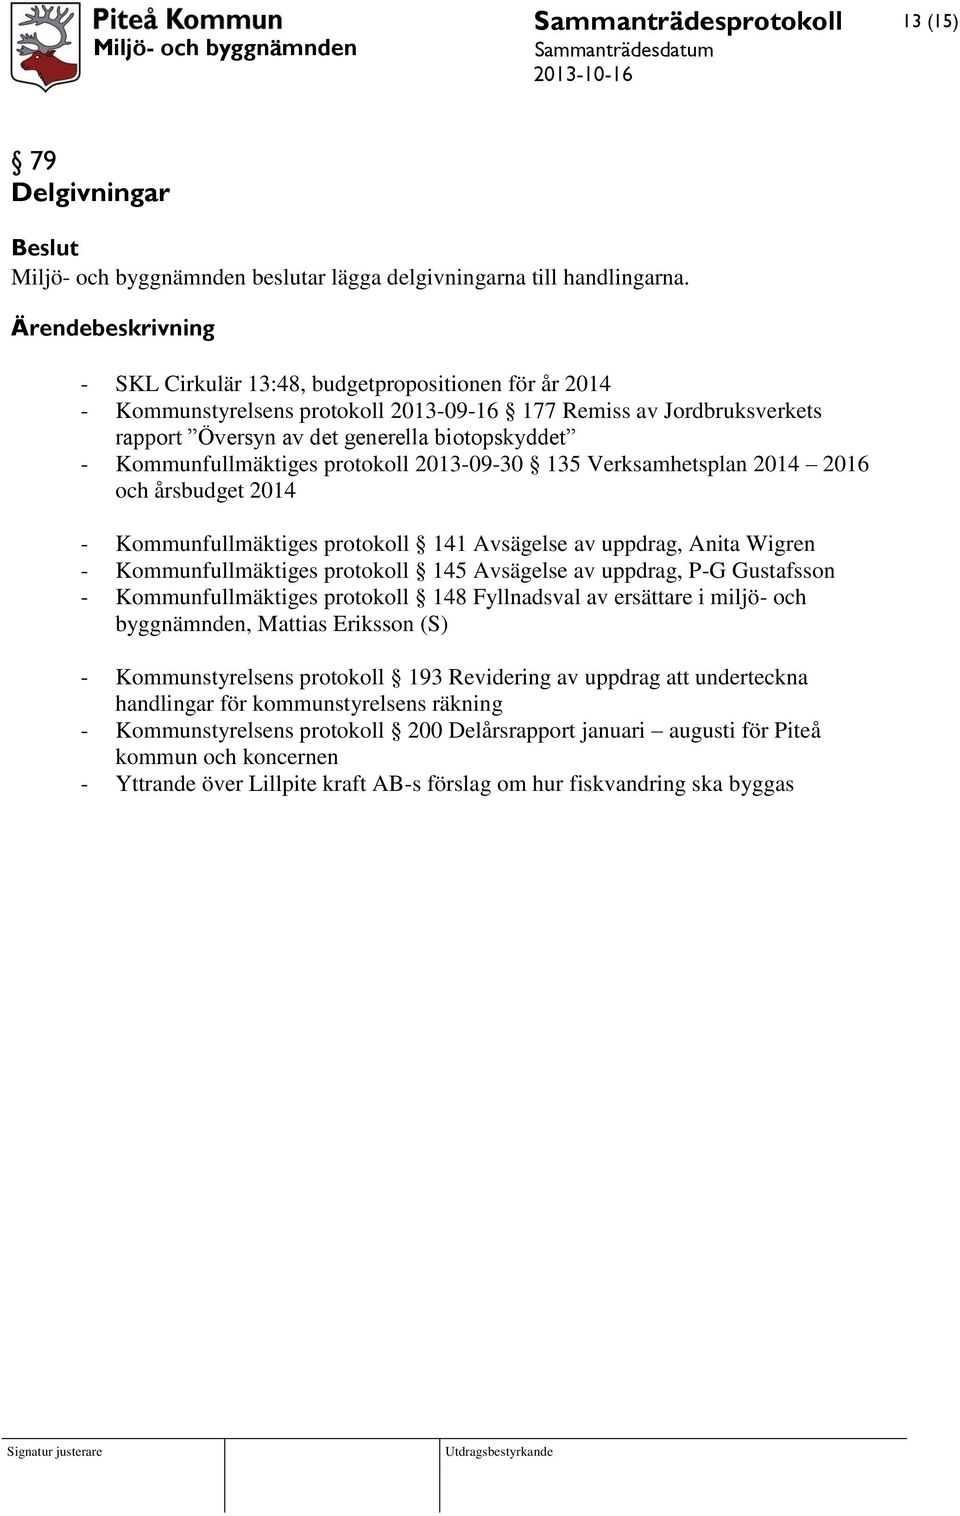 protokoll 2013-09-30 135 Verksamhetsplan 2014 2016 och årsbudget 2014 - Kommunfullmäktiges protokoll 141 Avsägelse av uppdrag, Anita Wigren - Kommunfullmäktiges protokoll 145 Avsägelse av uppdrag,